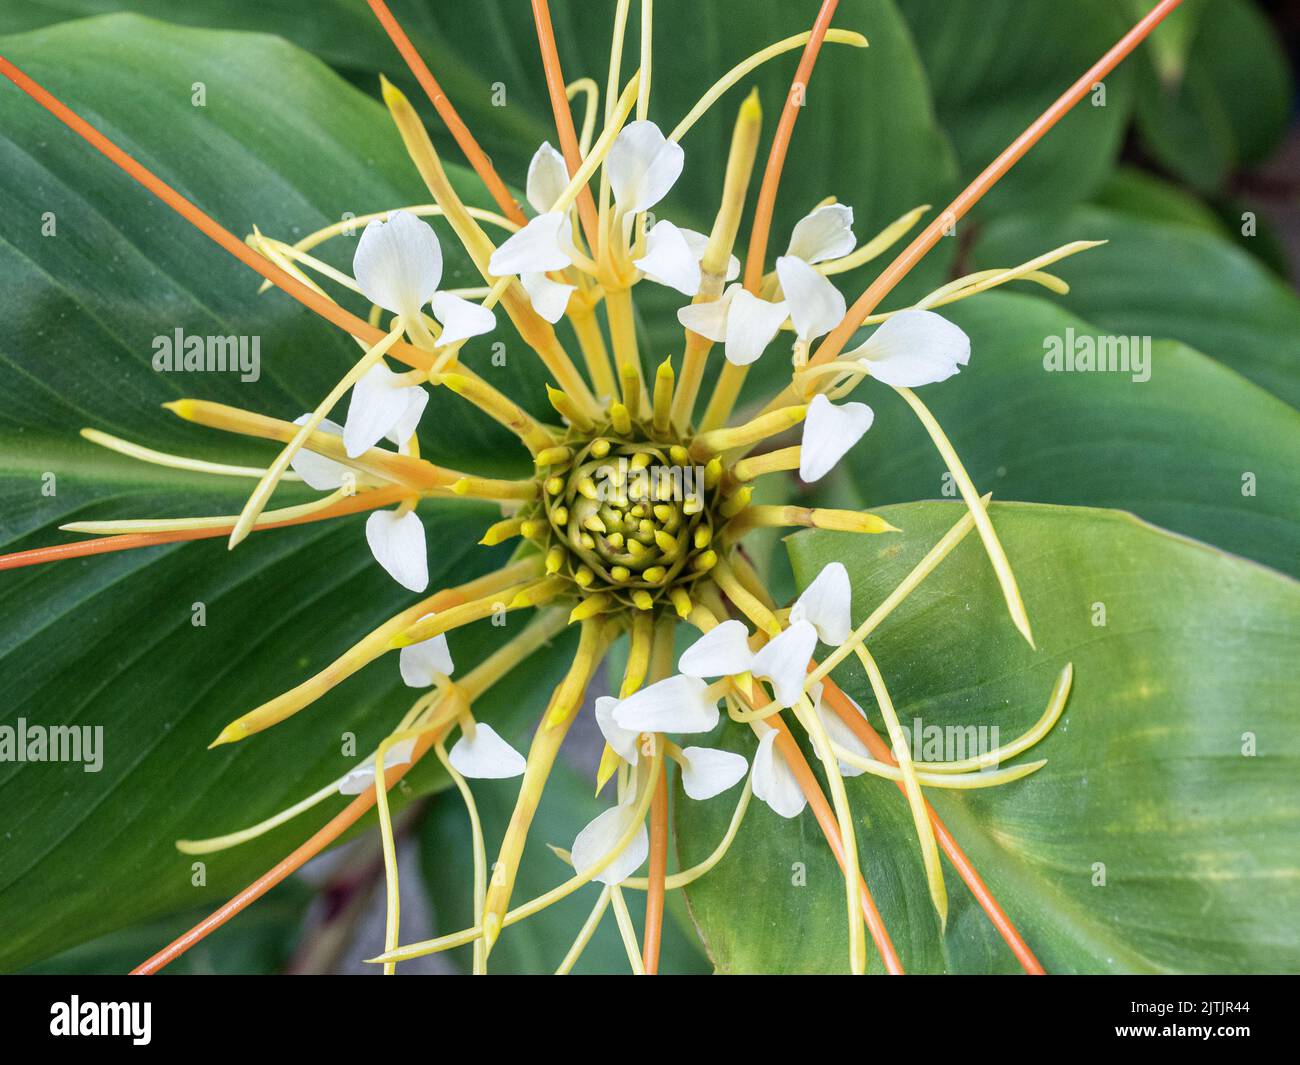 Eine Nahaufnahme der Mitte des sich öffnenden weißen Blütenkopfes der Ingwerlilie Hedychium ellipticum Stockfoto